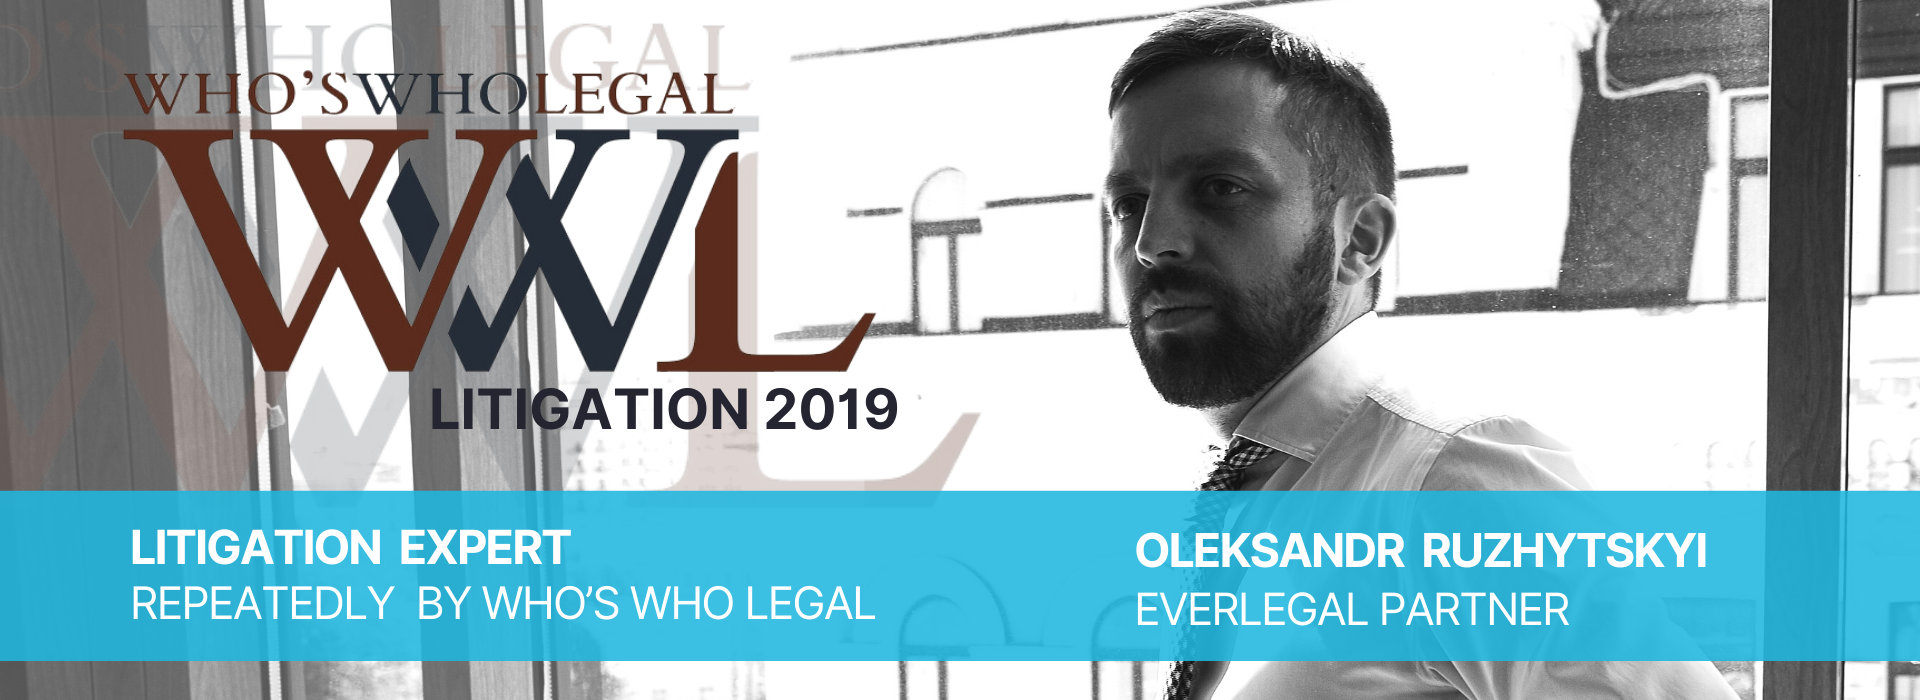 Who’s who legal: litigation 2019: Олександр Ружицький, партнер Everlegal, повторно визнаний експертом з вирішення спорів